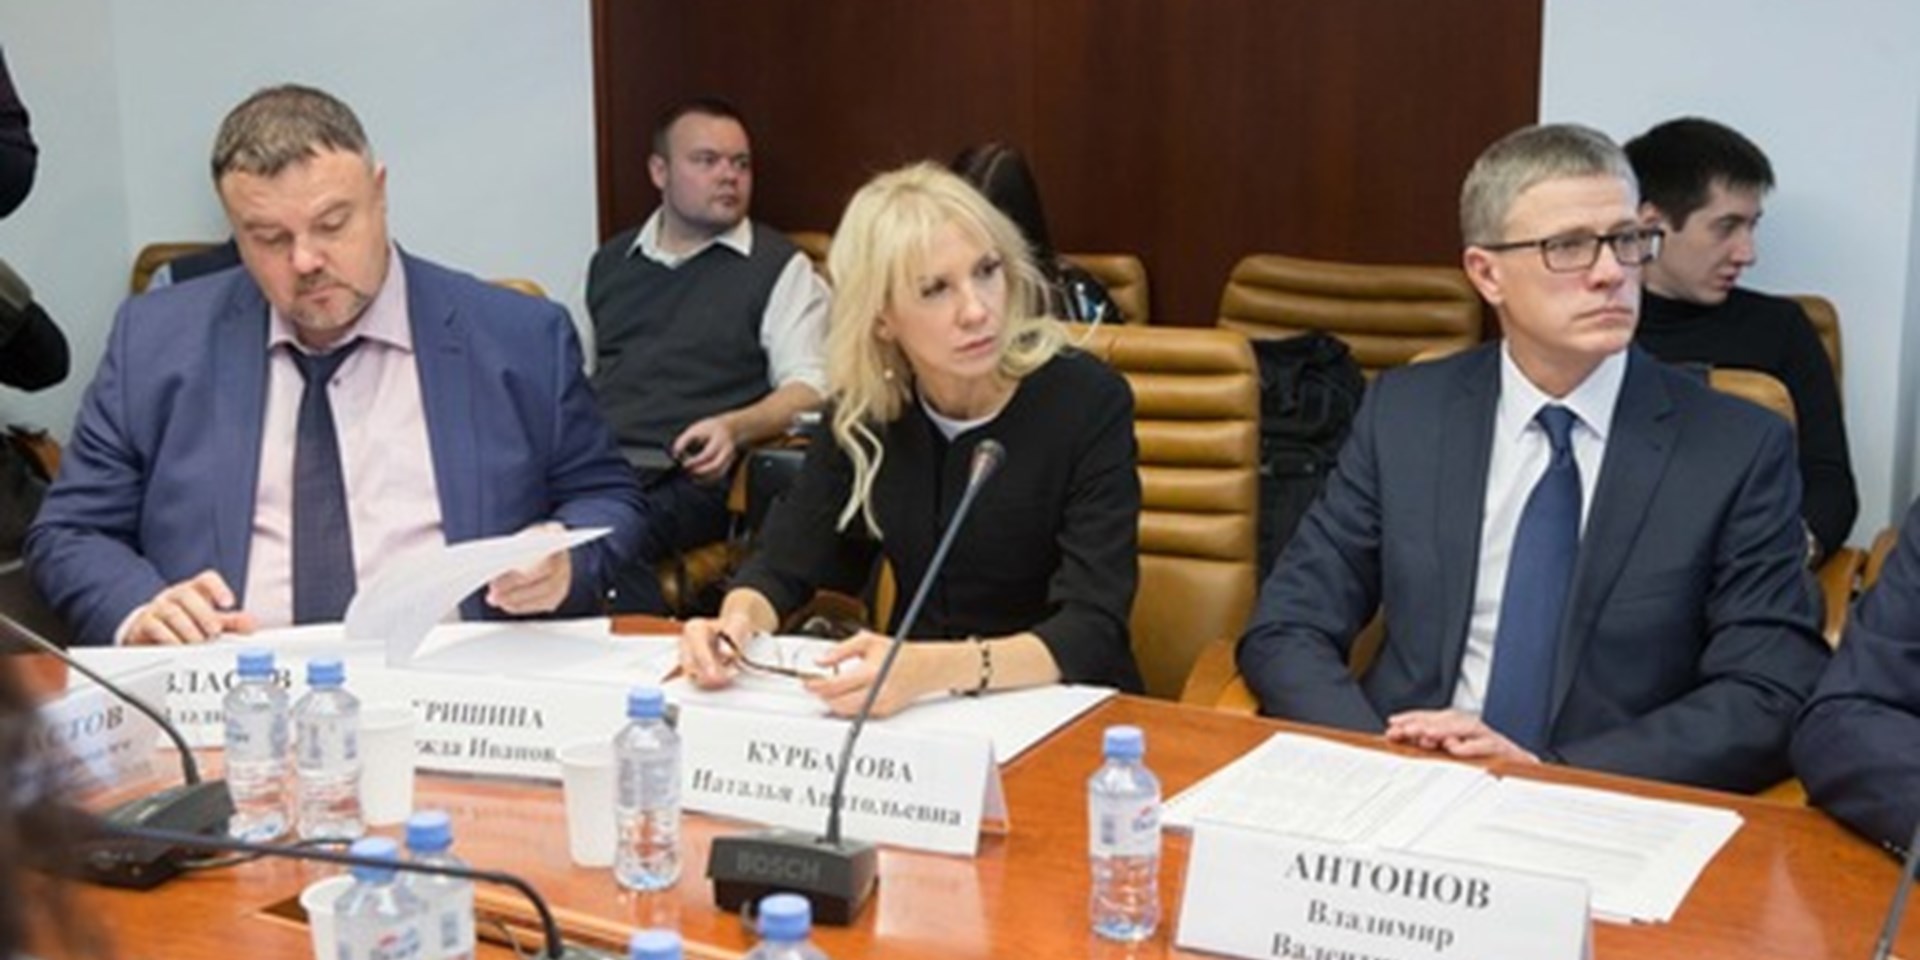 Ян Власов выступил с докладом на круглом столе Комитета Совета Федерации по социальной политике